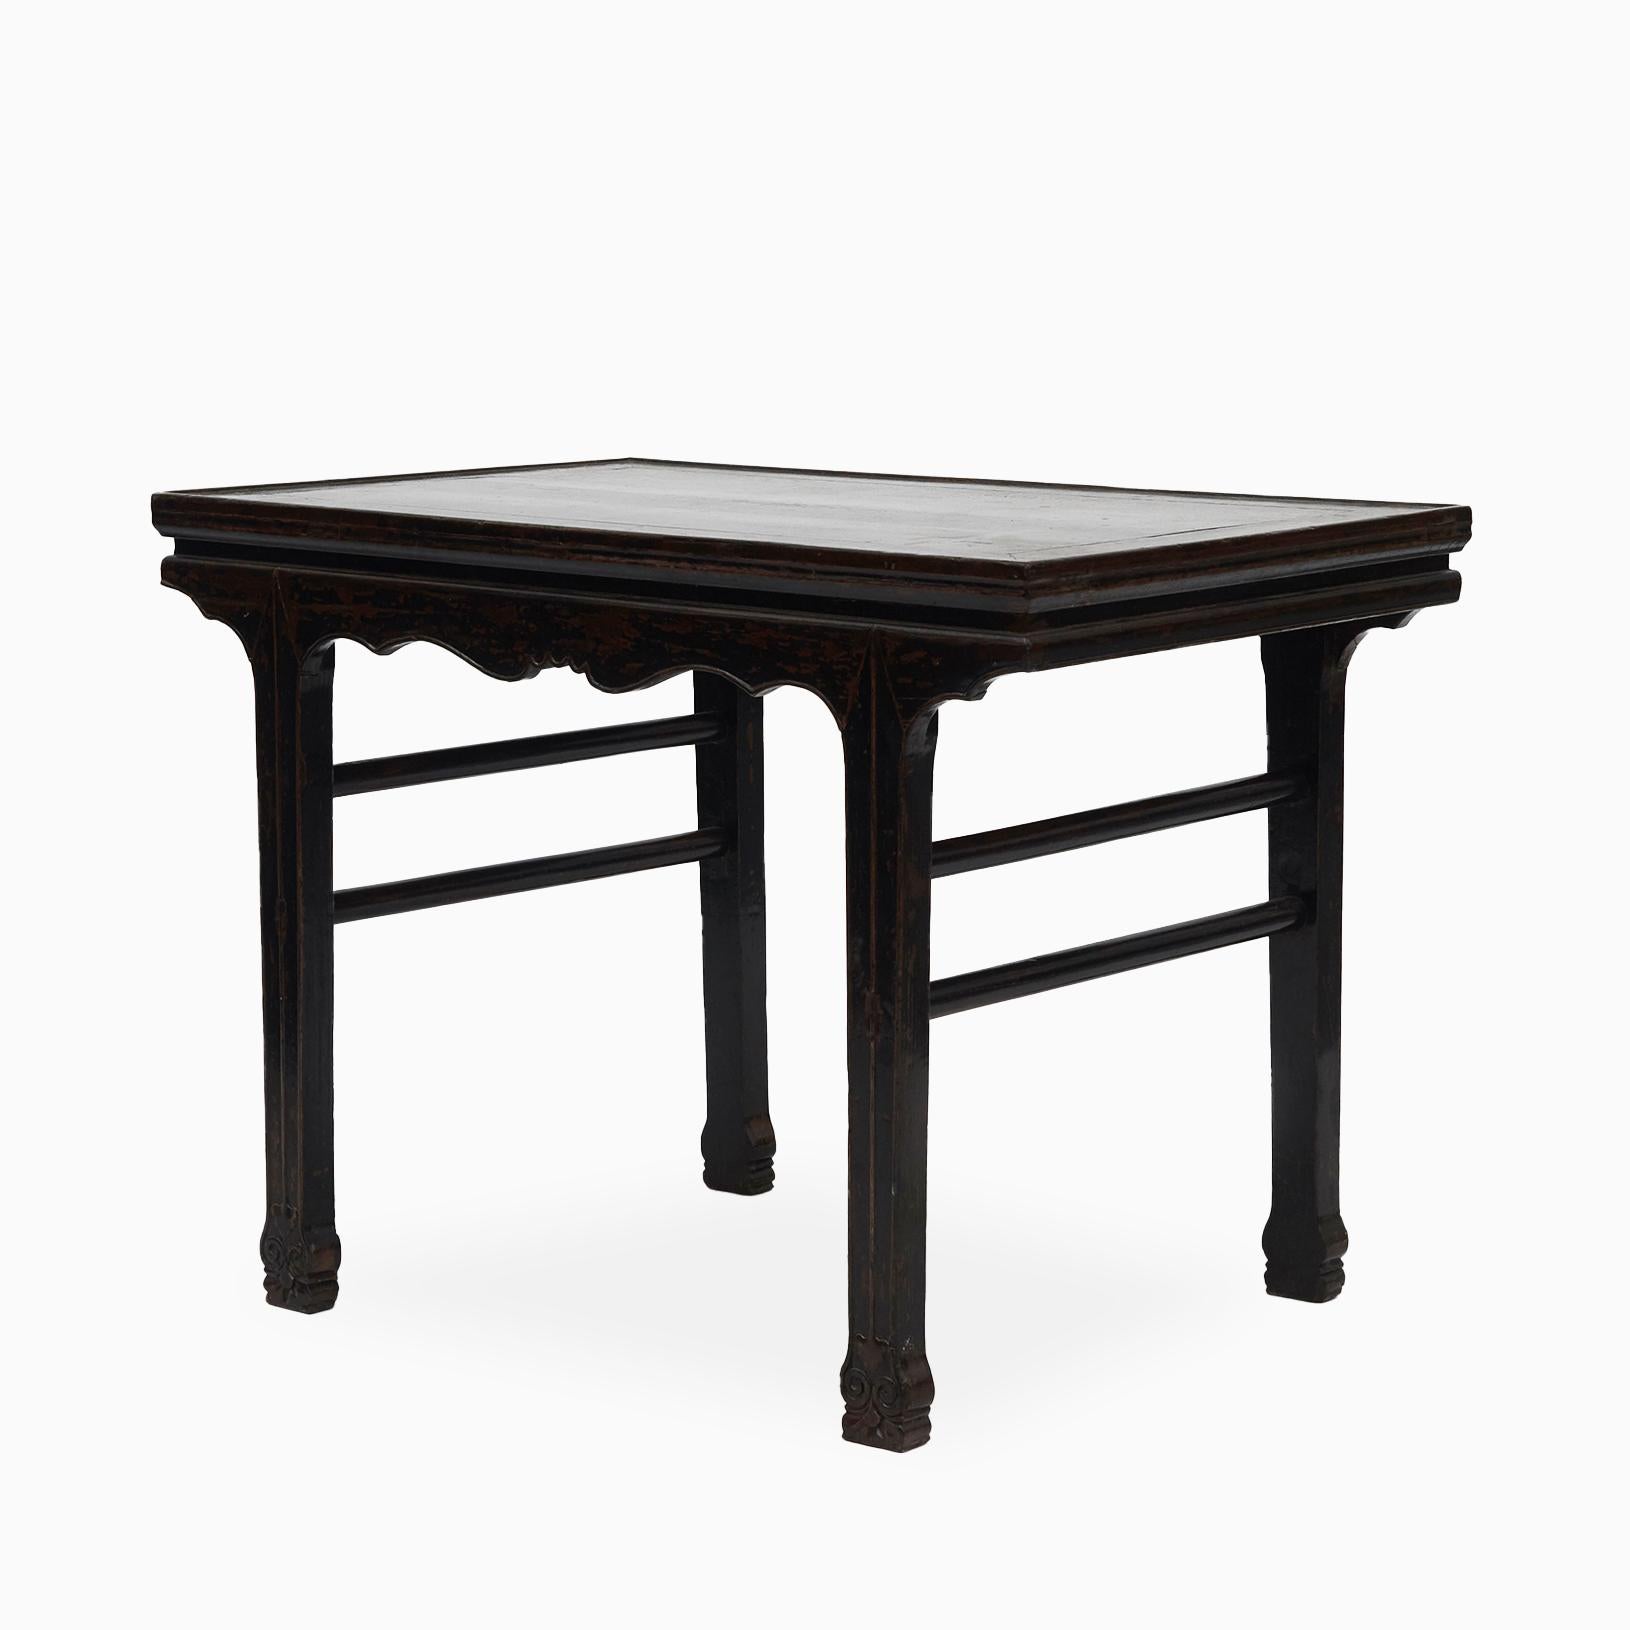 Antiker chinesischer Weintisch aus dem 18. Jahrhundert, schwarz lackiert.
Tischplatte aus schwarz lackiertem Segeltuch über einer eleganten, mit geschnitzten Zwickeln versehenen Schürze. Die Tischplatte ist mit Segeltuch überzogen, da der